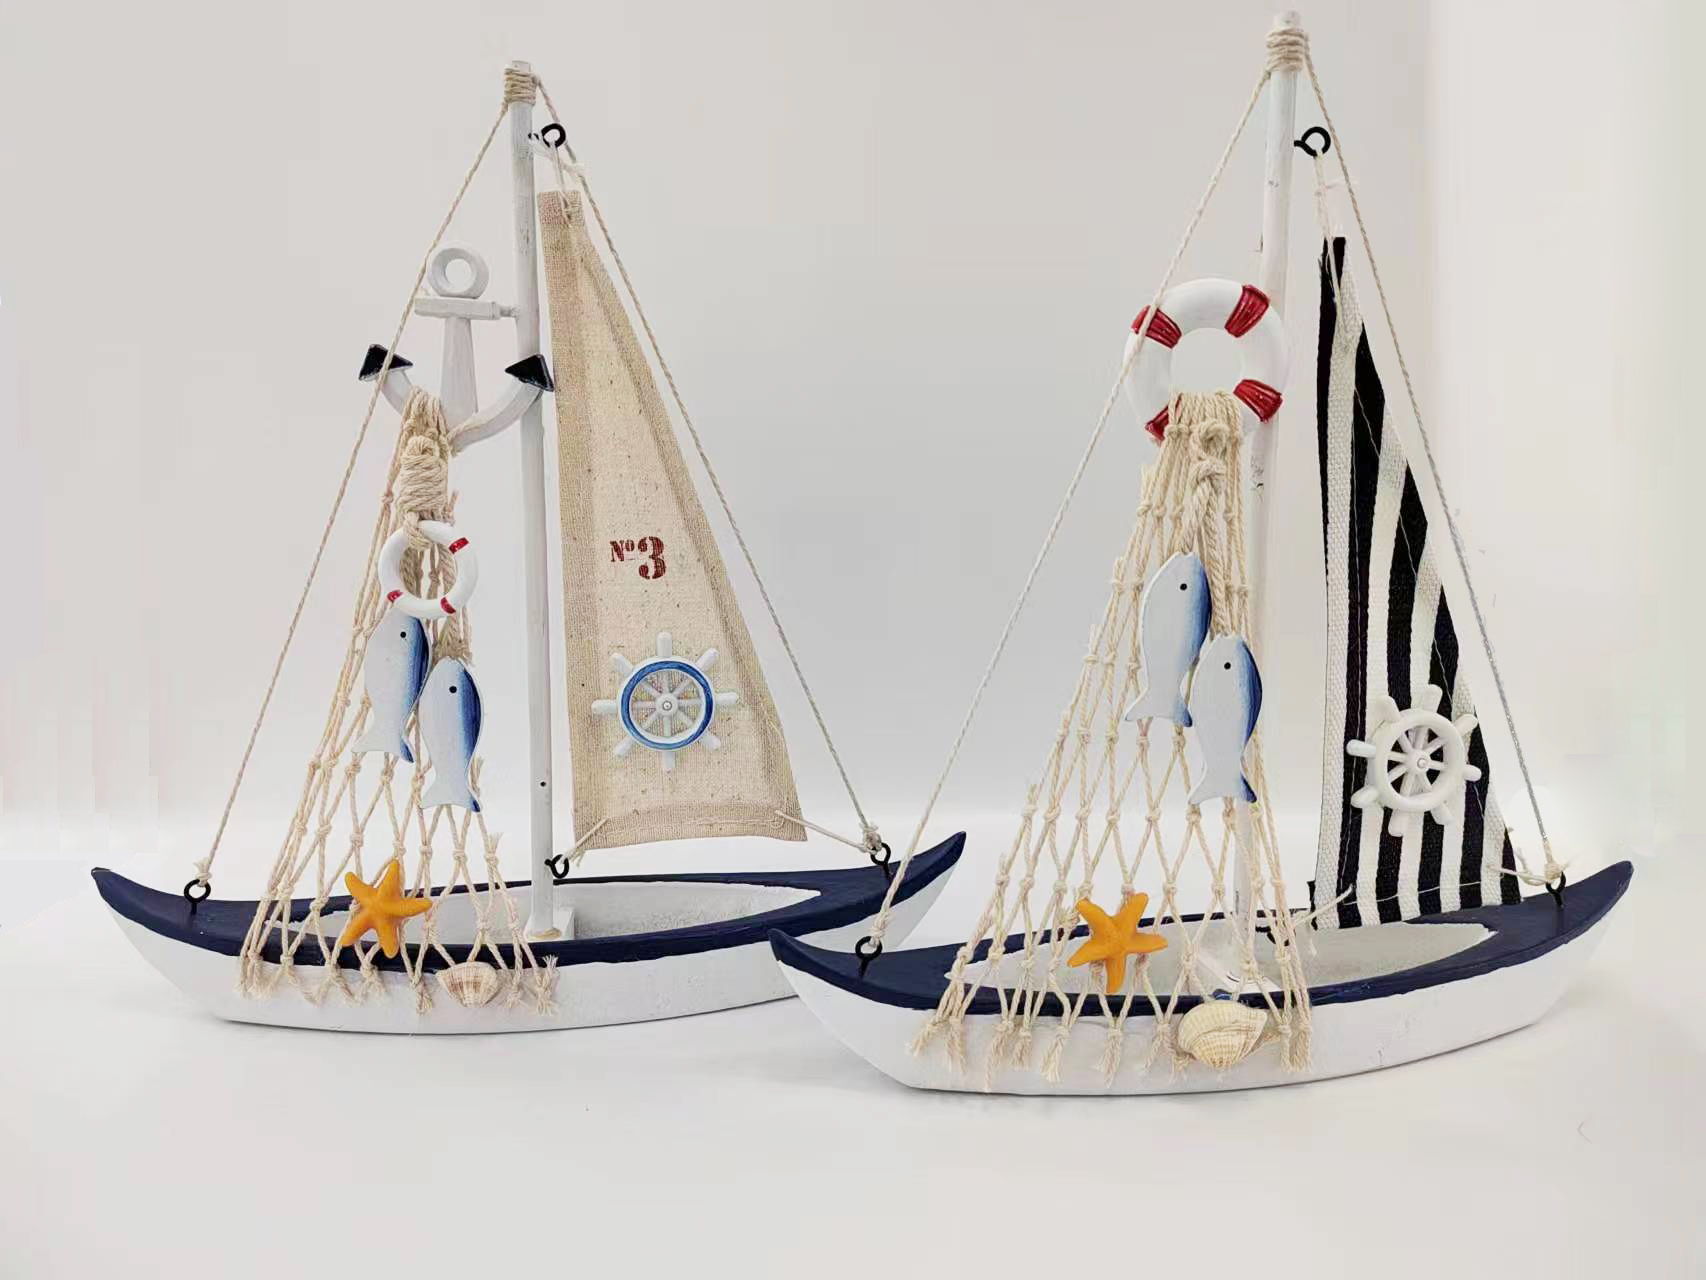 美式帆船 地中海风格船 家居饰品船模创意家居 家居摆件2023W73详情图1